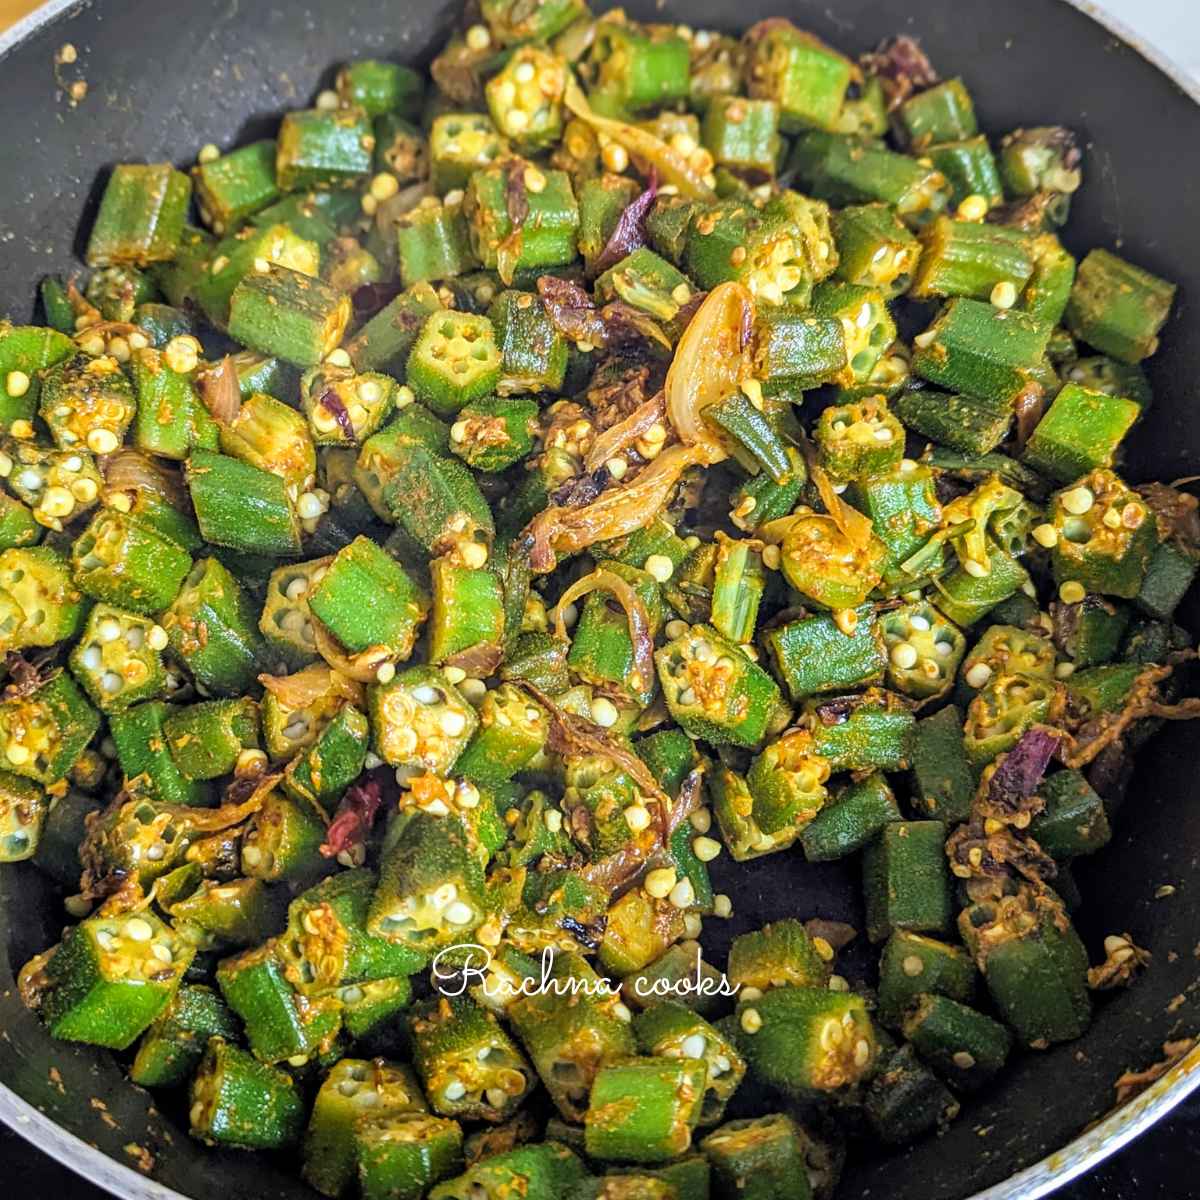 Cooked okra or bhindi masala in the pan.